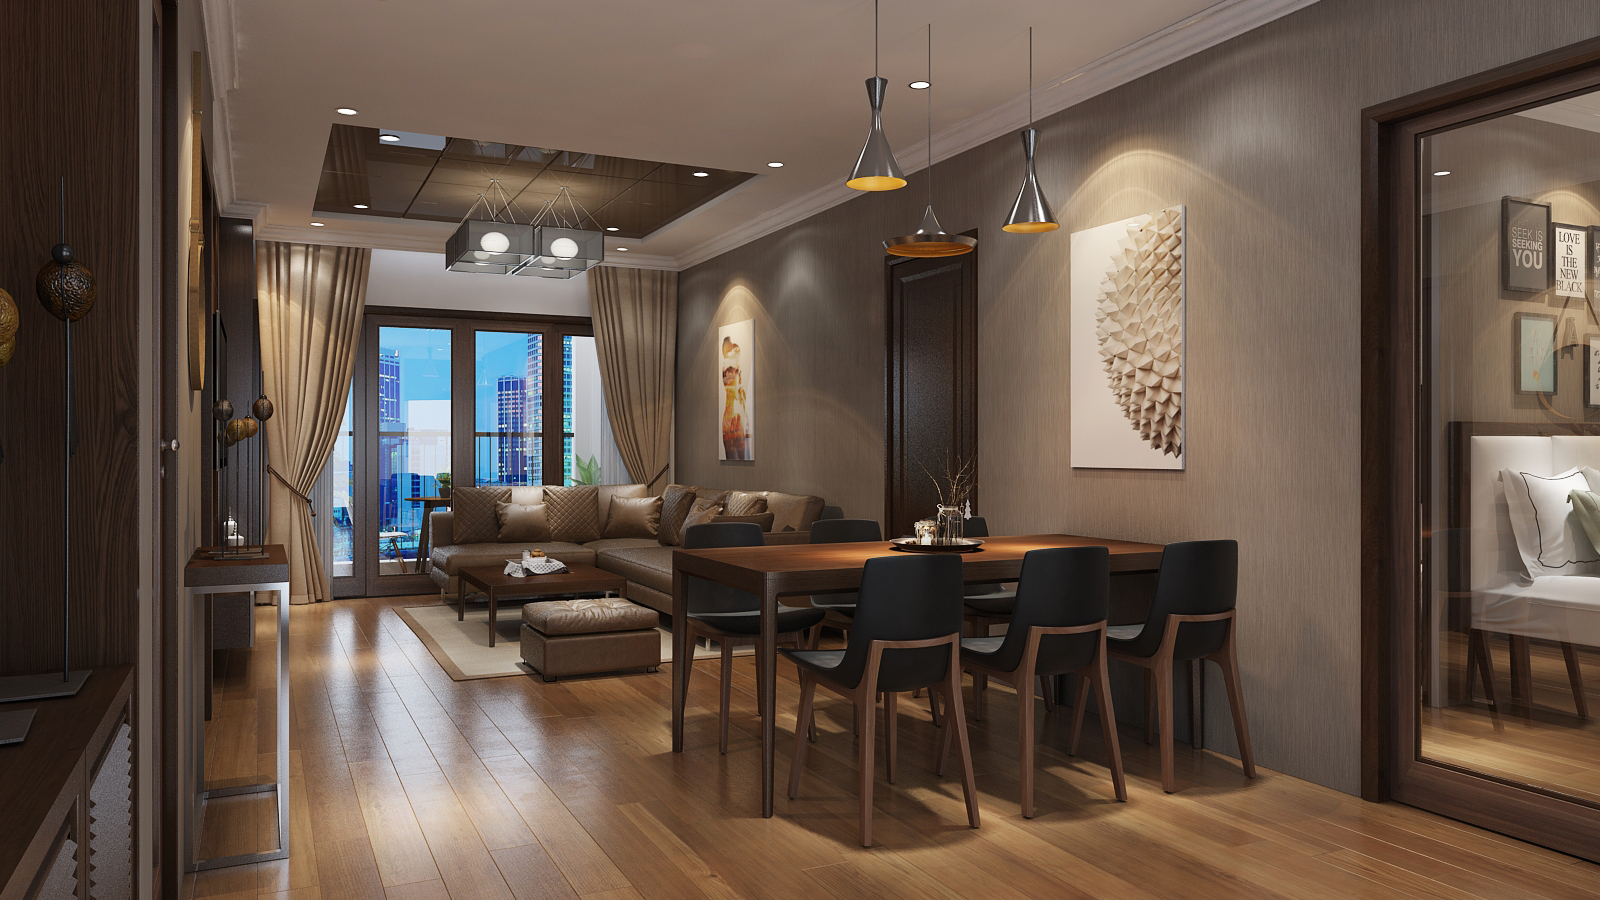 Thiết kế nội thất Chung Cư tại Hà Nội Thiết kế nội thất căn hộ chung cư Royal City - R108 1614415039 3